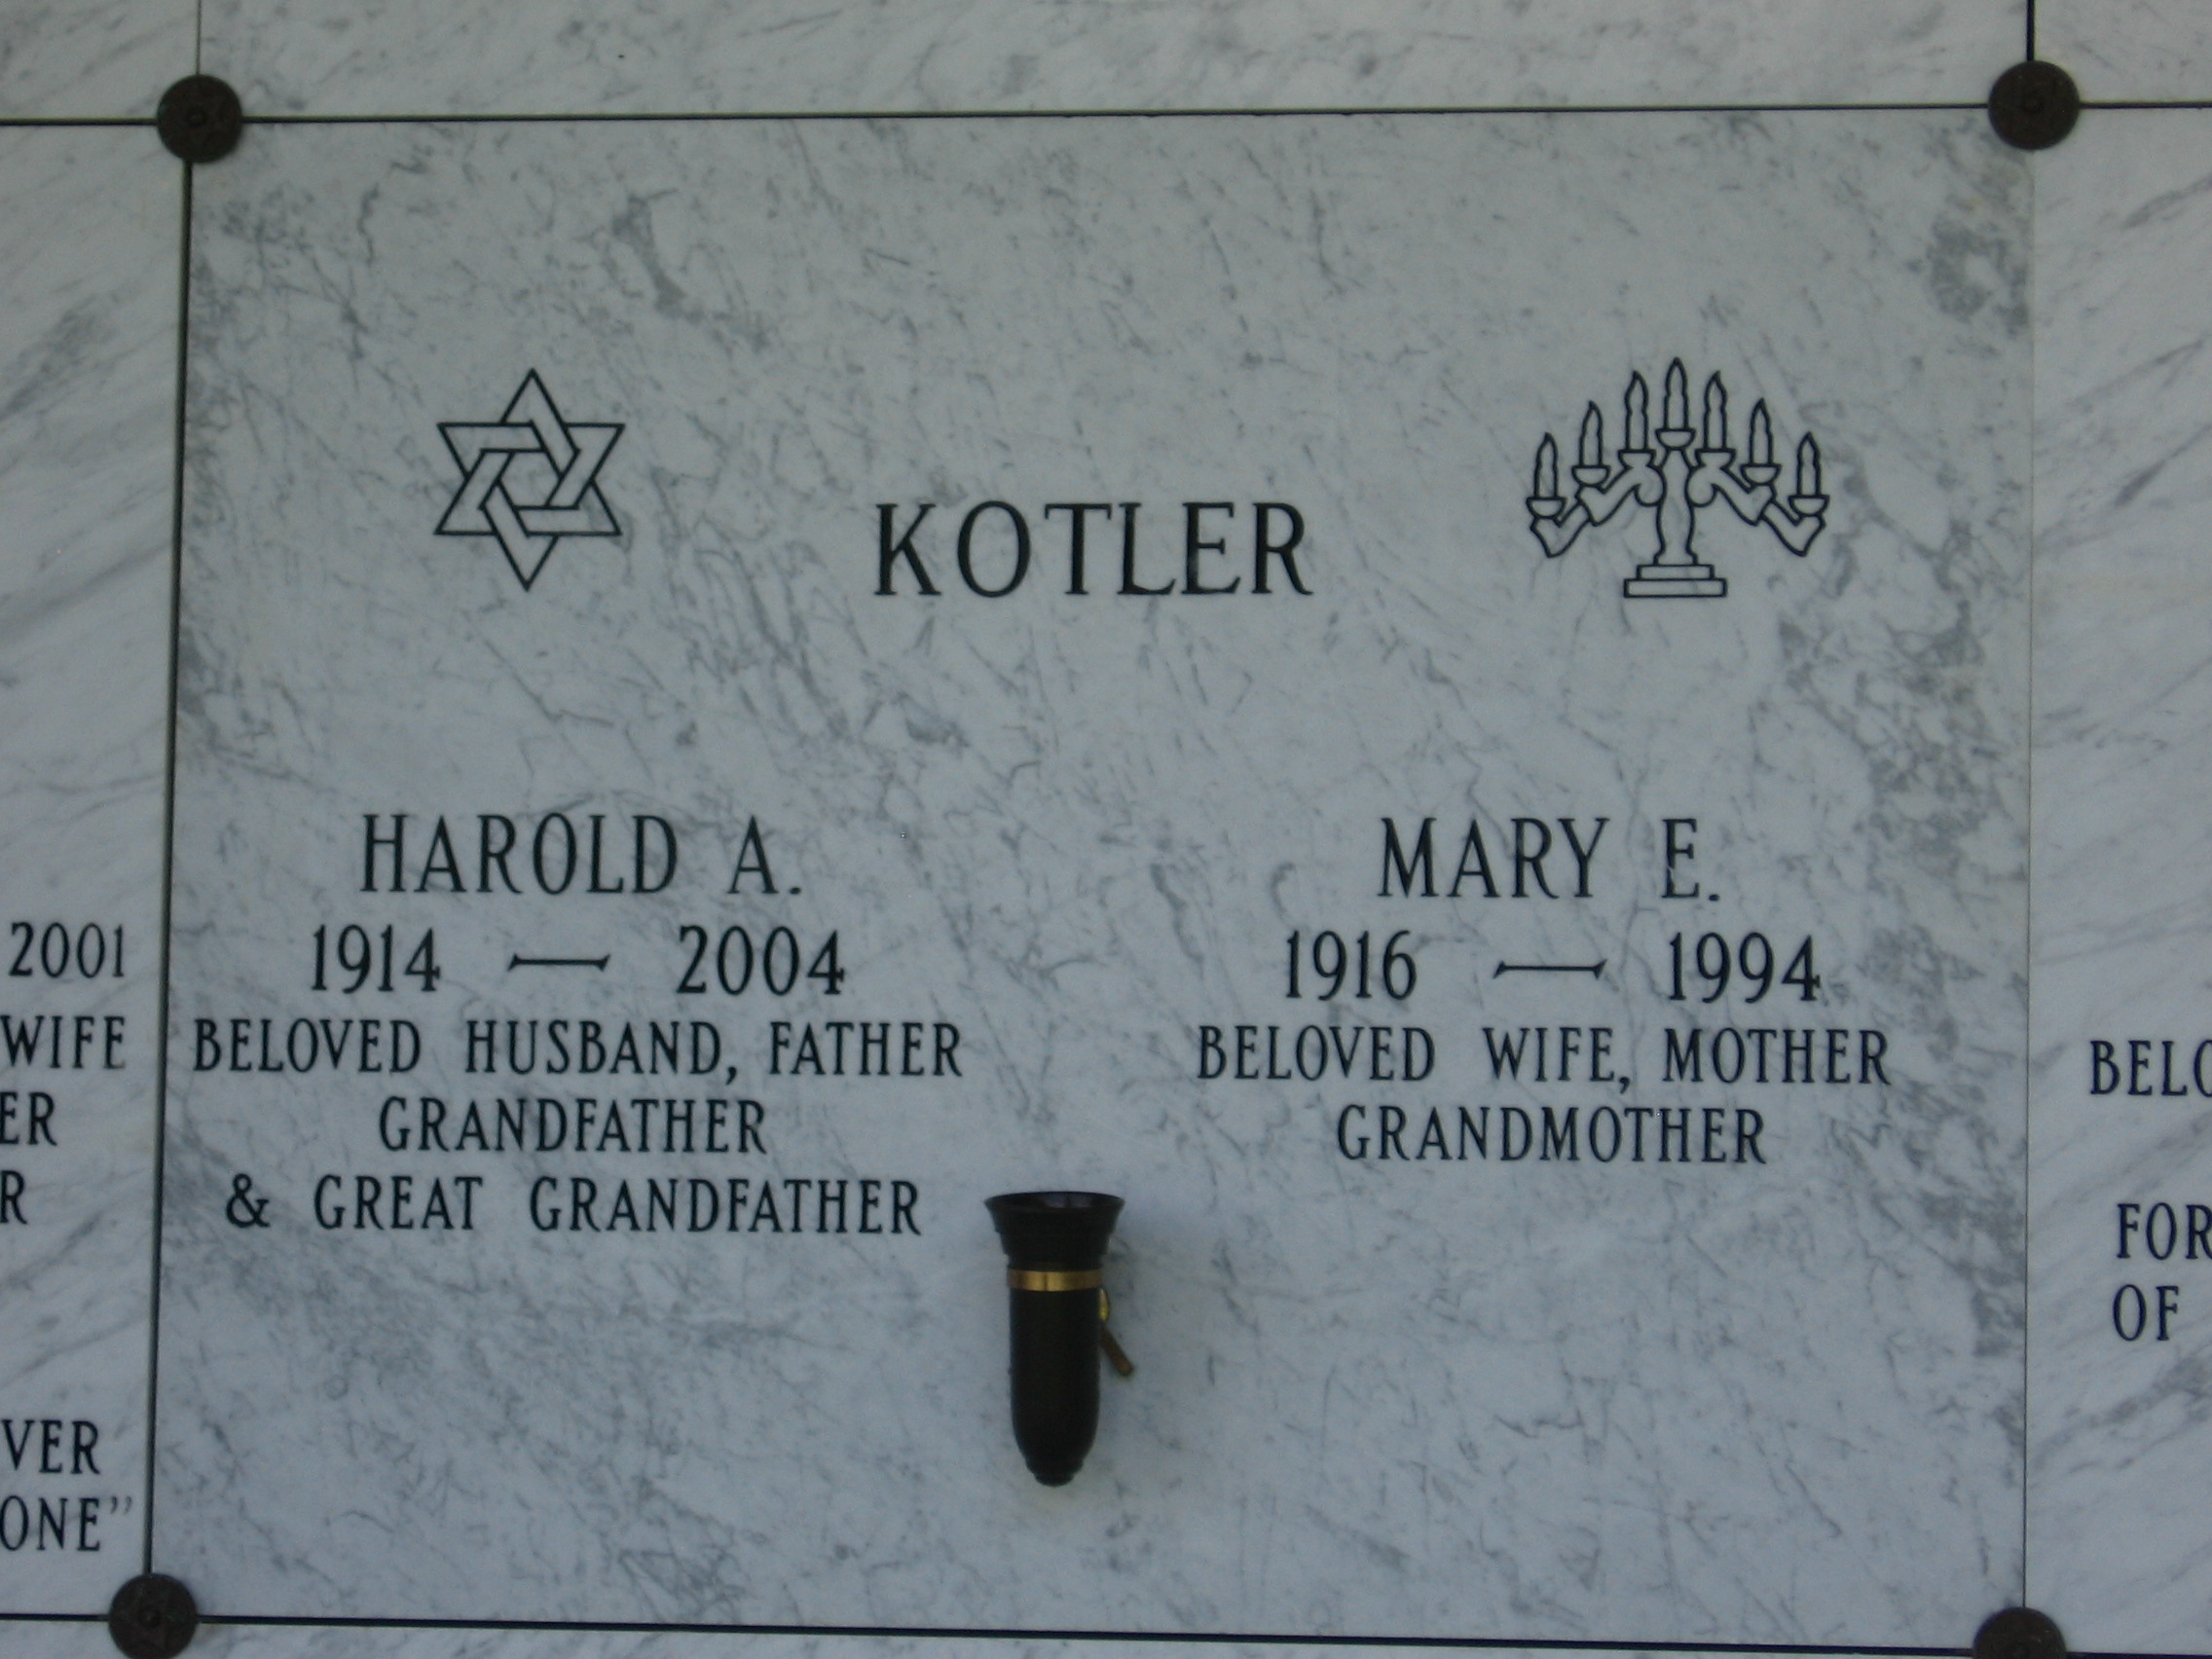 Harold A Kotler